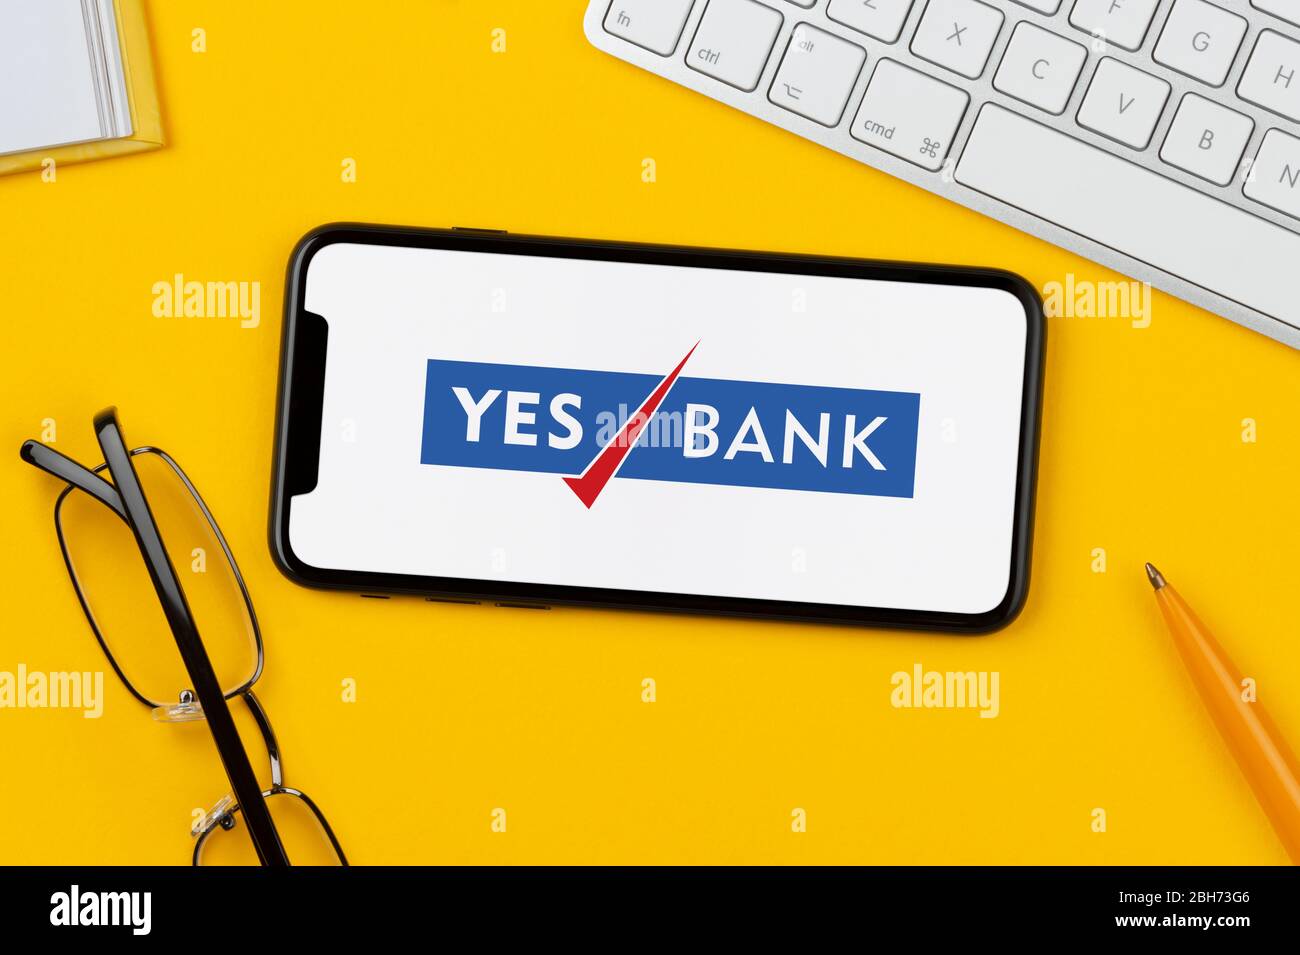 Uno smartphone con il logo Yes Bank è posizionato su uno sfondo giallo insieme a tastiera, occhiali, penna e libro (solo per uso editoriale). Foto Stock